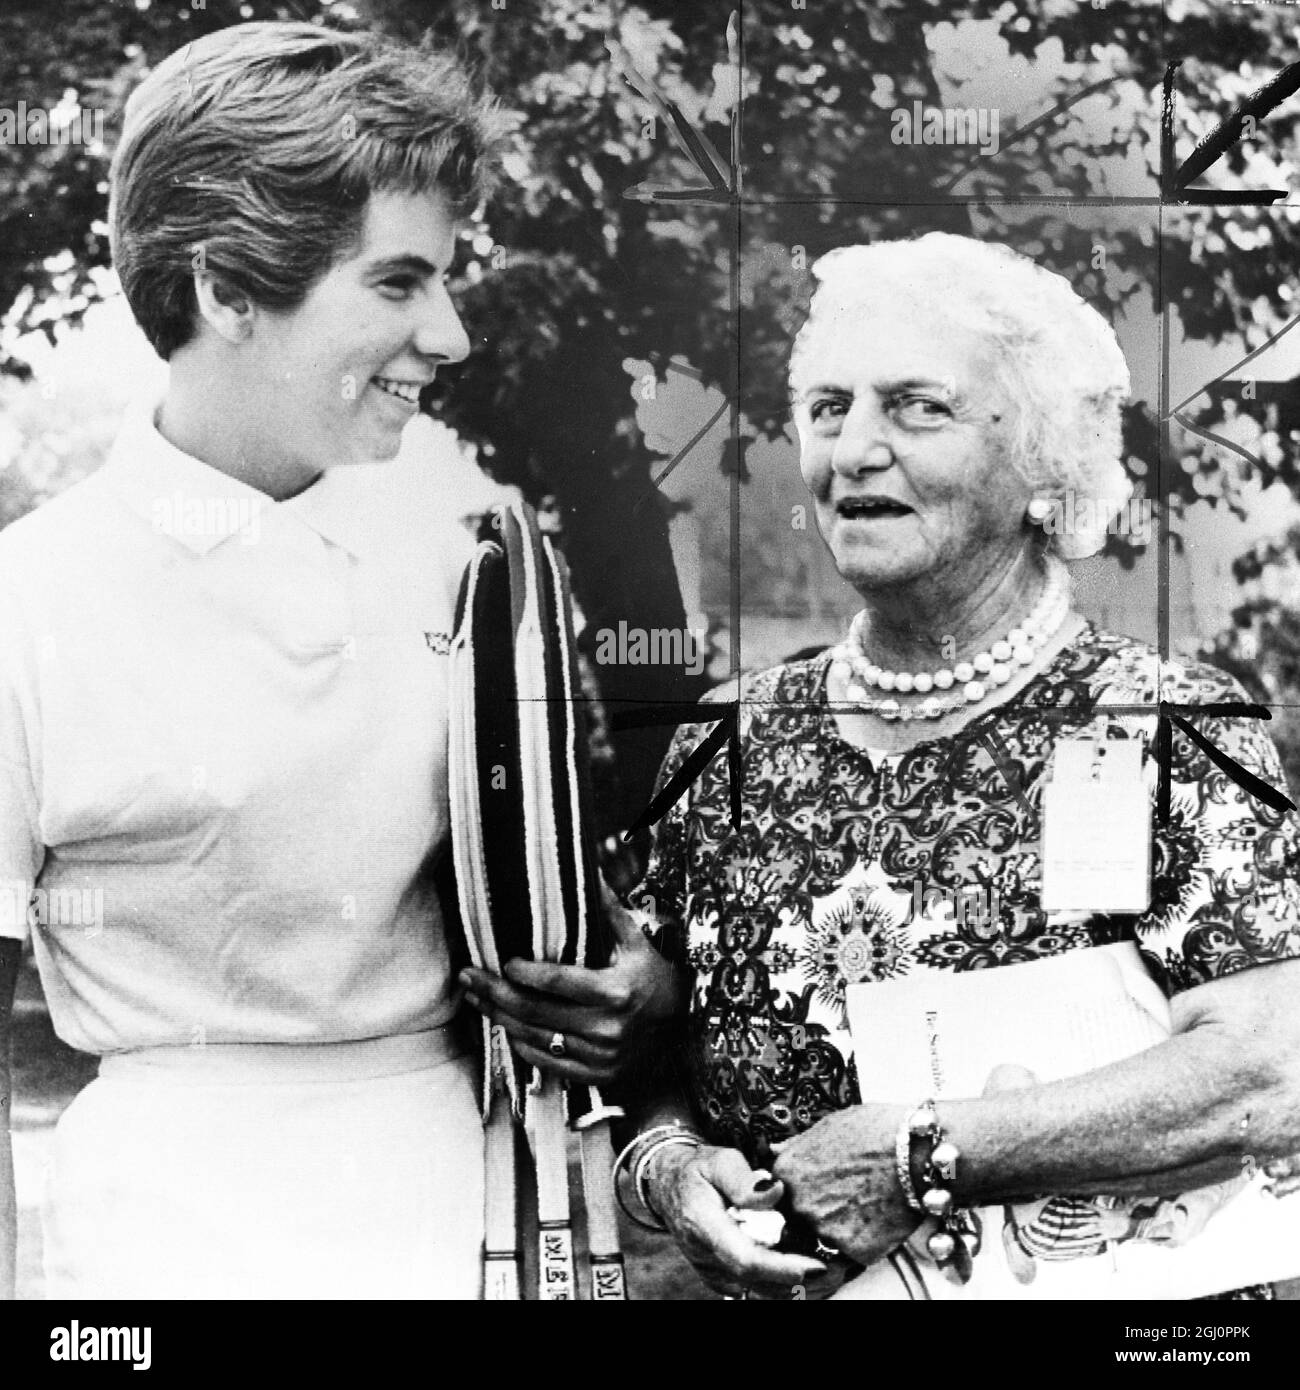 Hazel Hotchkiss Wightman (à droite) - joueur de tennis américain et fondateur de la coupe Wightman 1960 Banque D'Images